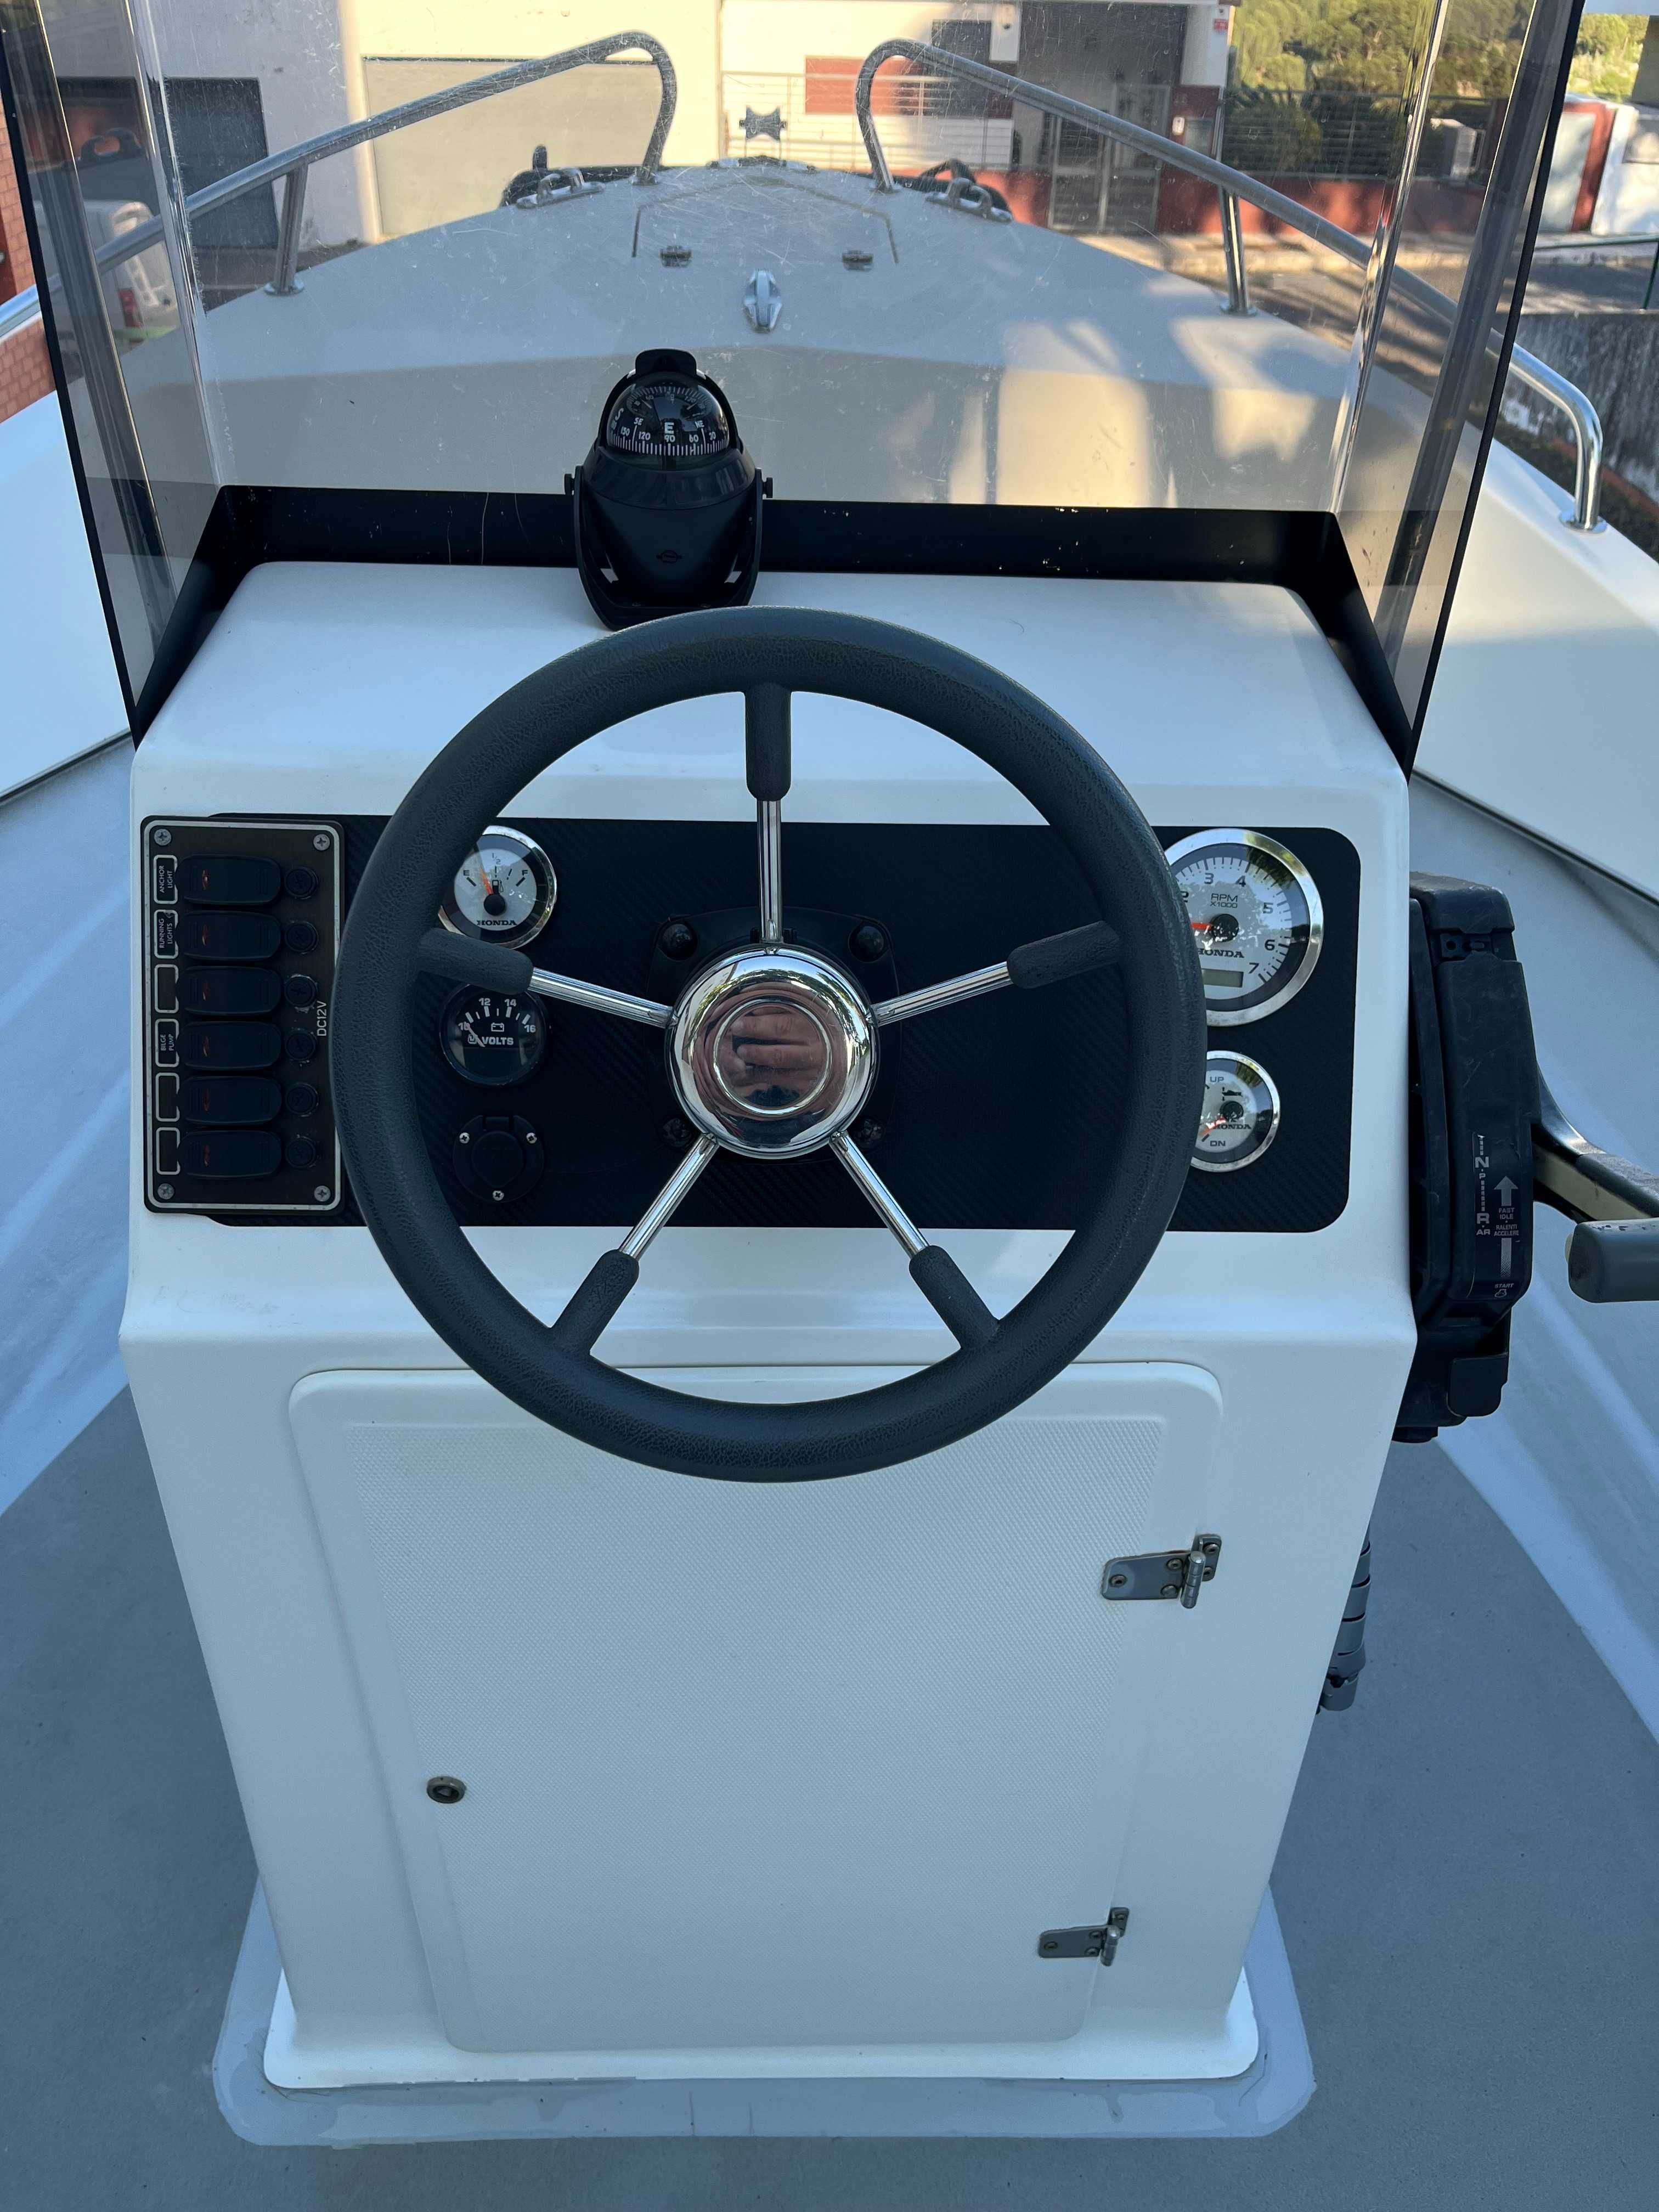 Barco Fibramar Pescador 485 modelo novo